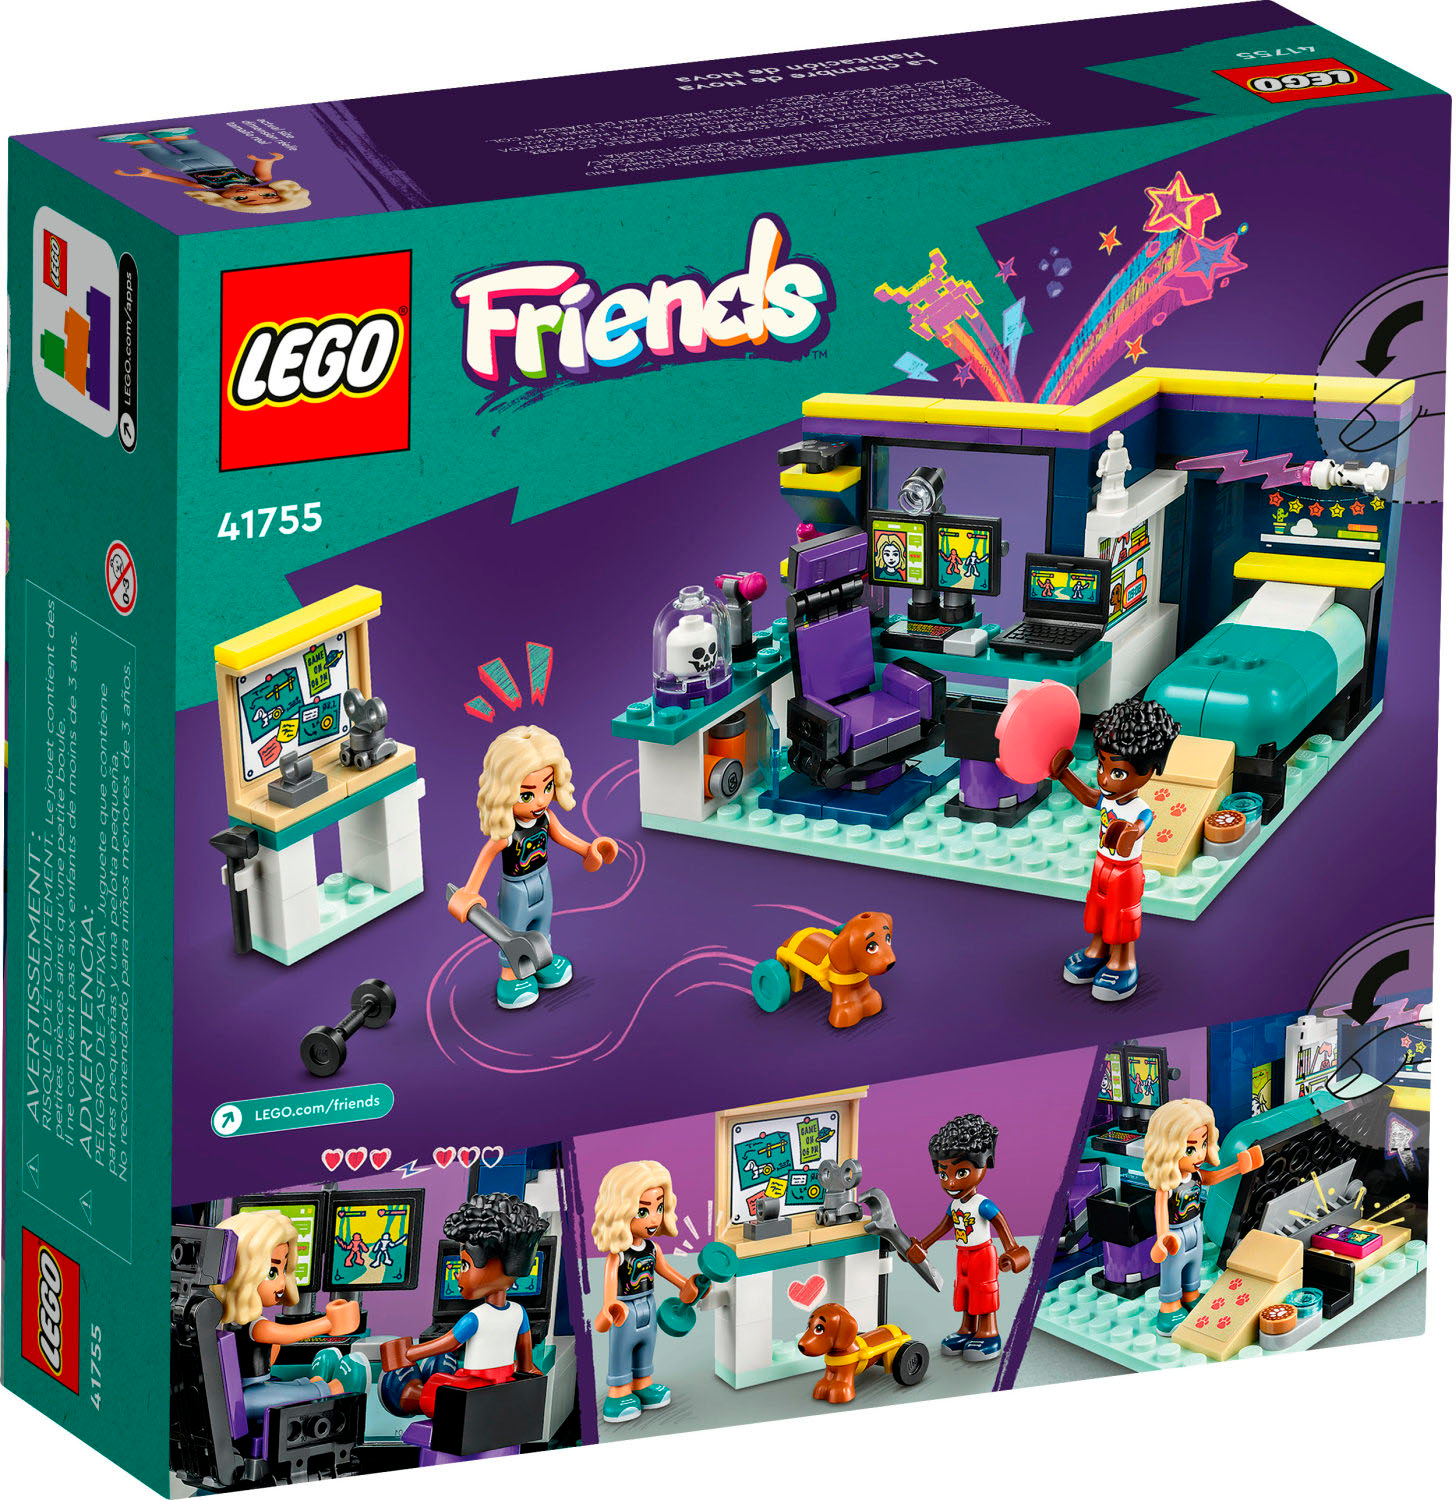 Lego Friends - La Chambre de Liann - 41739